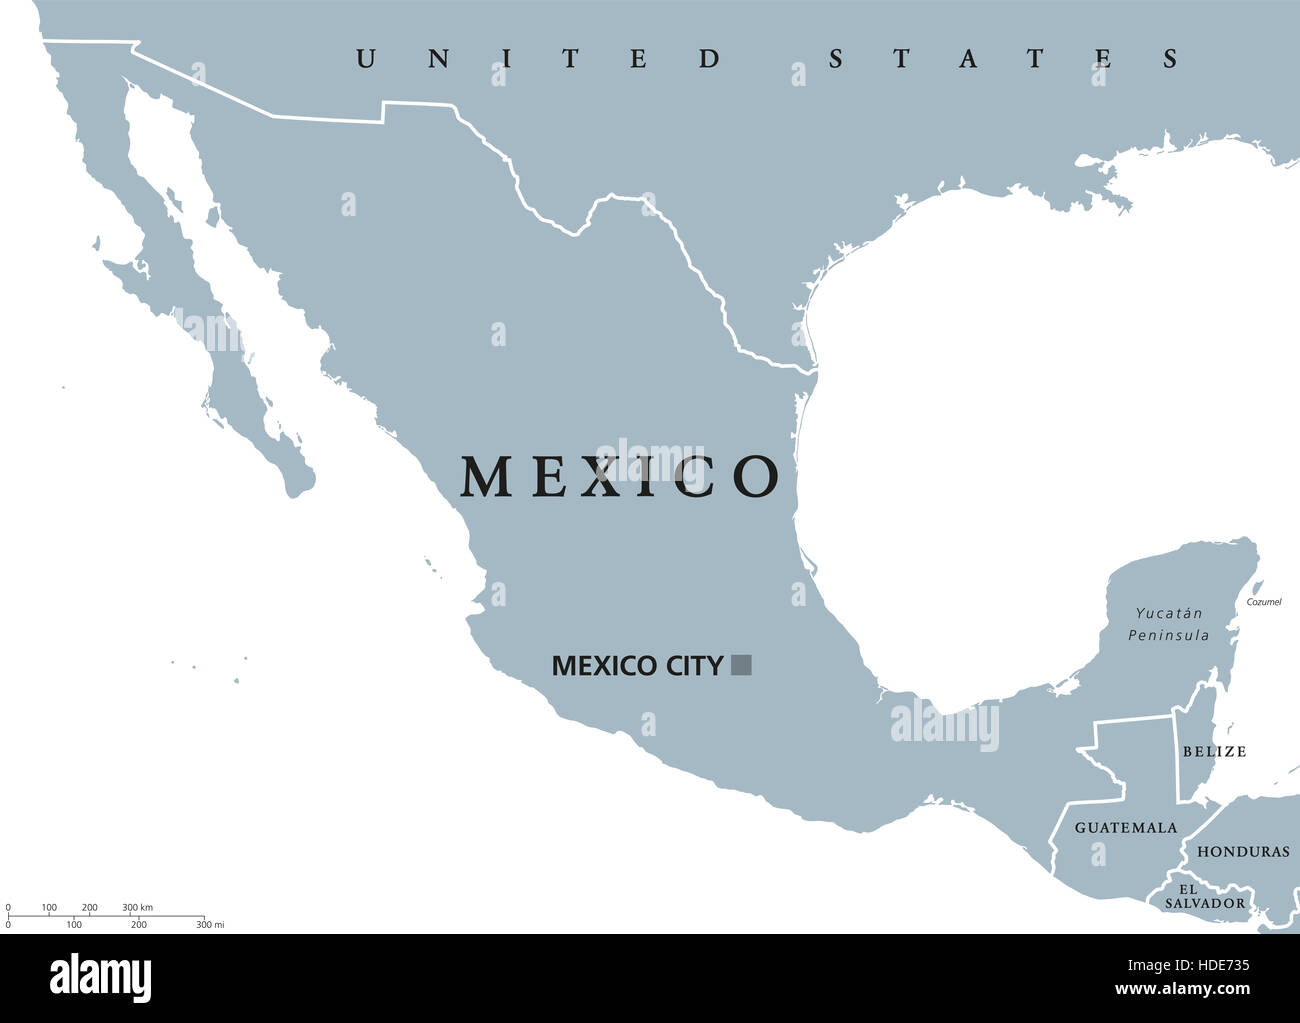 Carte politique du Mexique avec capital Mexico et les frontières nationales. États-unis du Mexique, une république fédérale d'Amérique du Nord. Banque D'Images